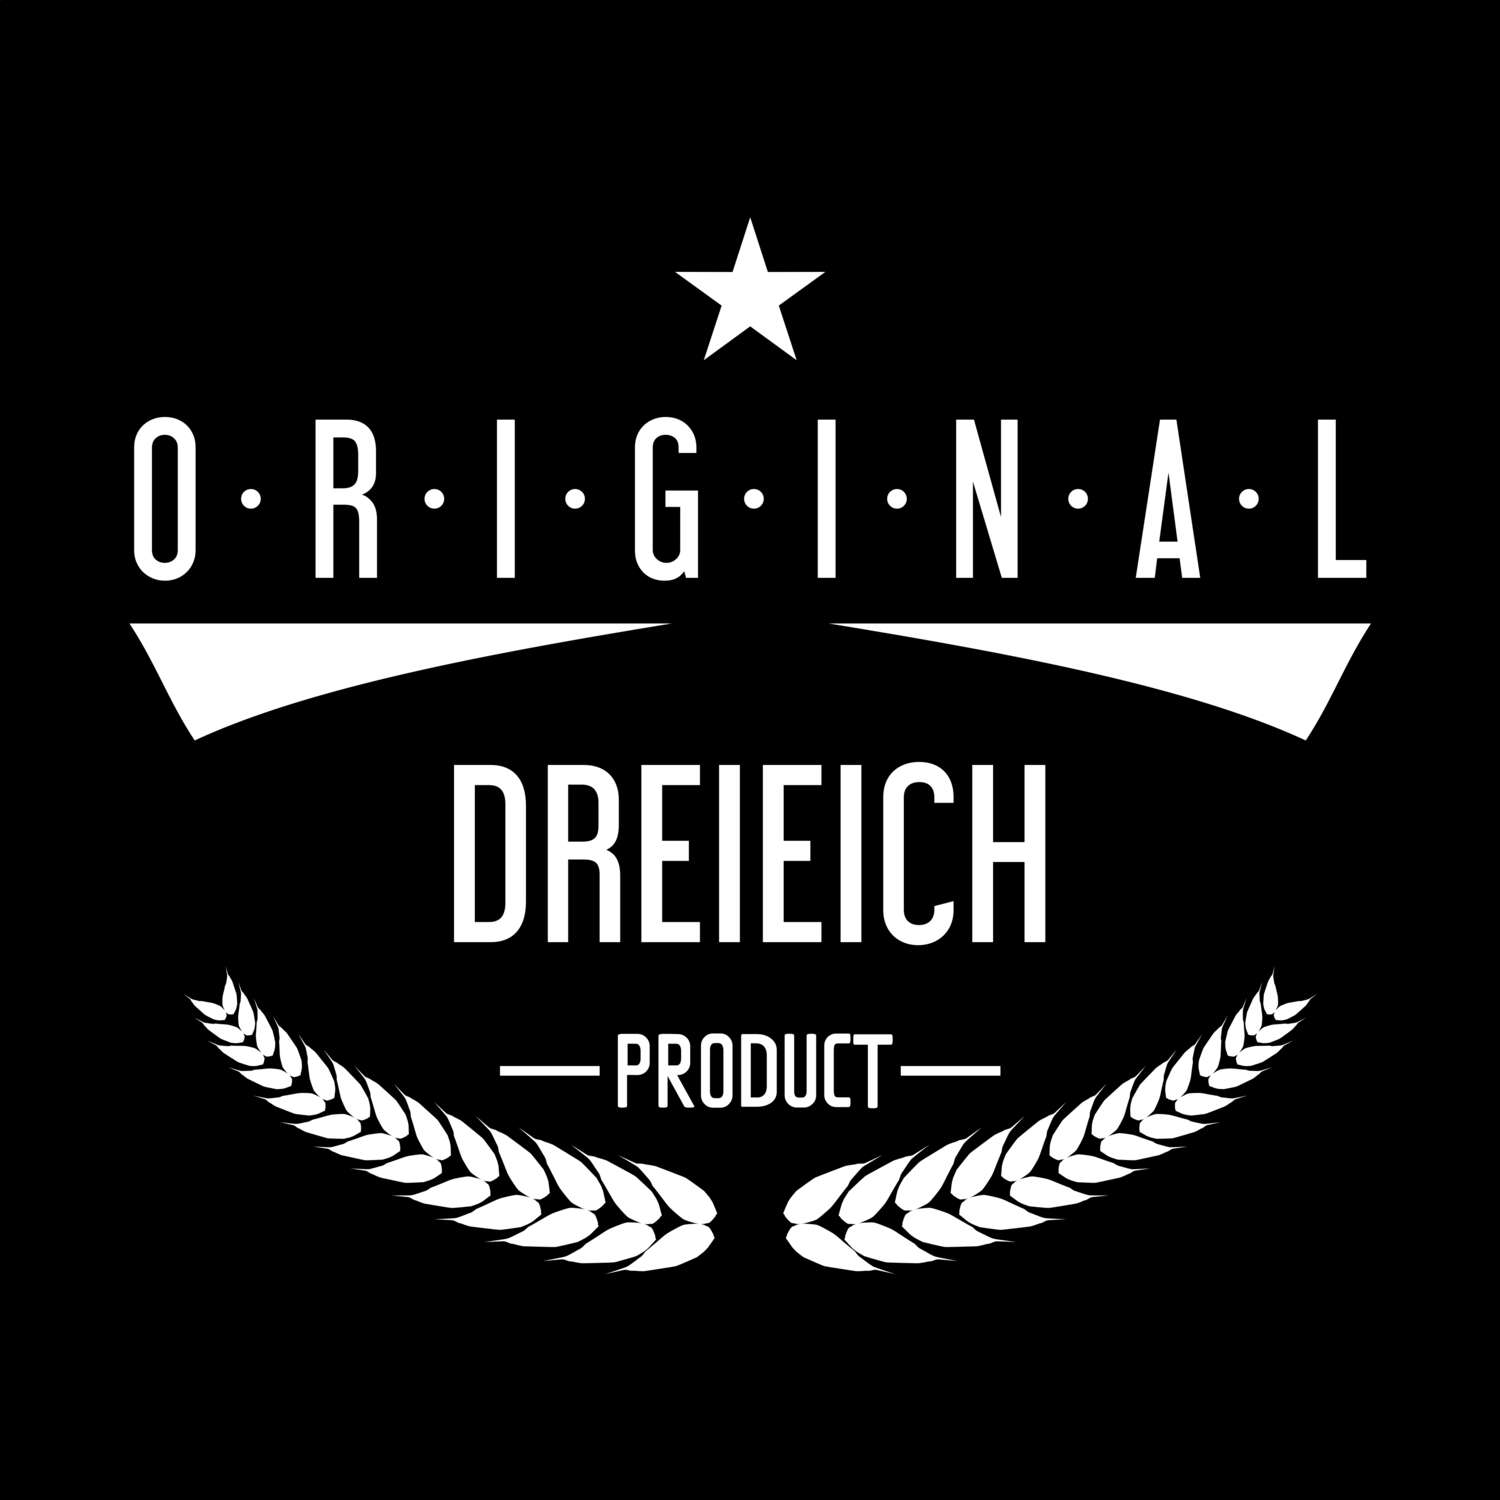 Dreieich T-Shirt »Original Product«